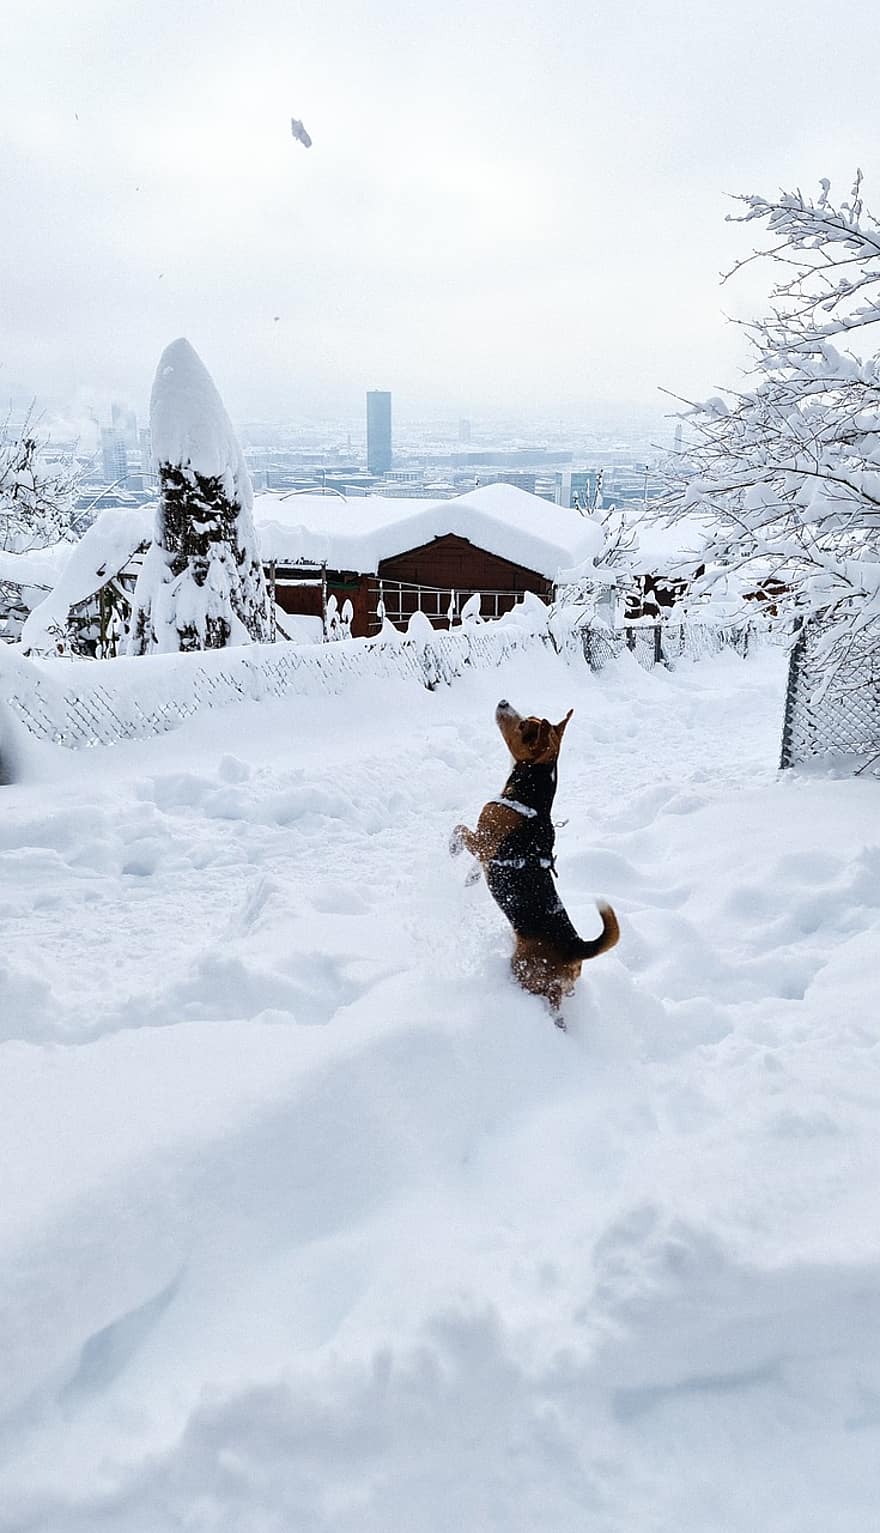 chó, tuyết, mùa đông, chơi, vật nuôi, vui tươi, con chó vui tươi, có tuyết rơi, khô héo, sương muối, băng giá